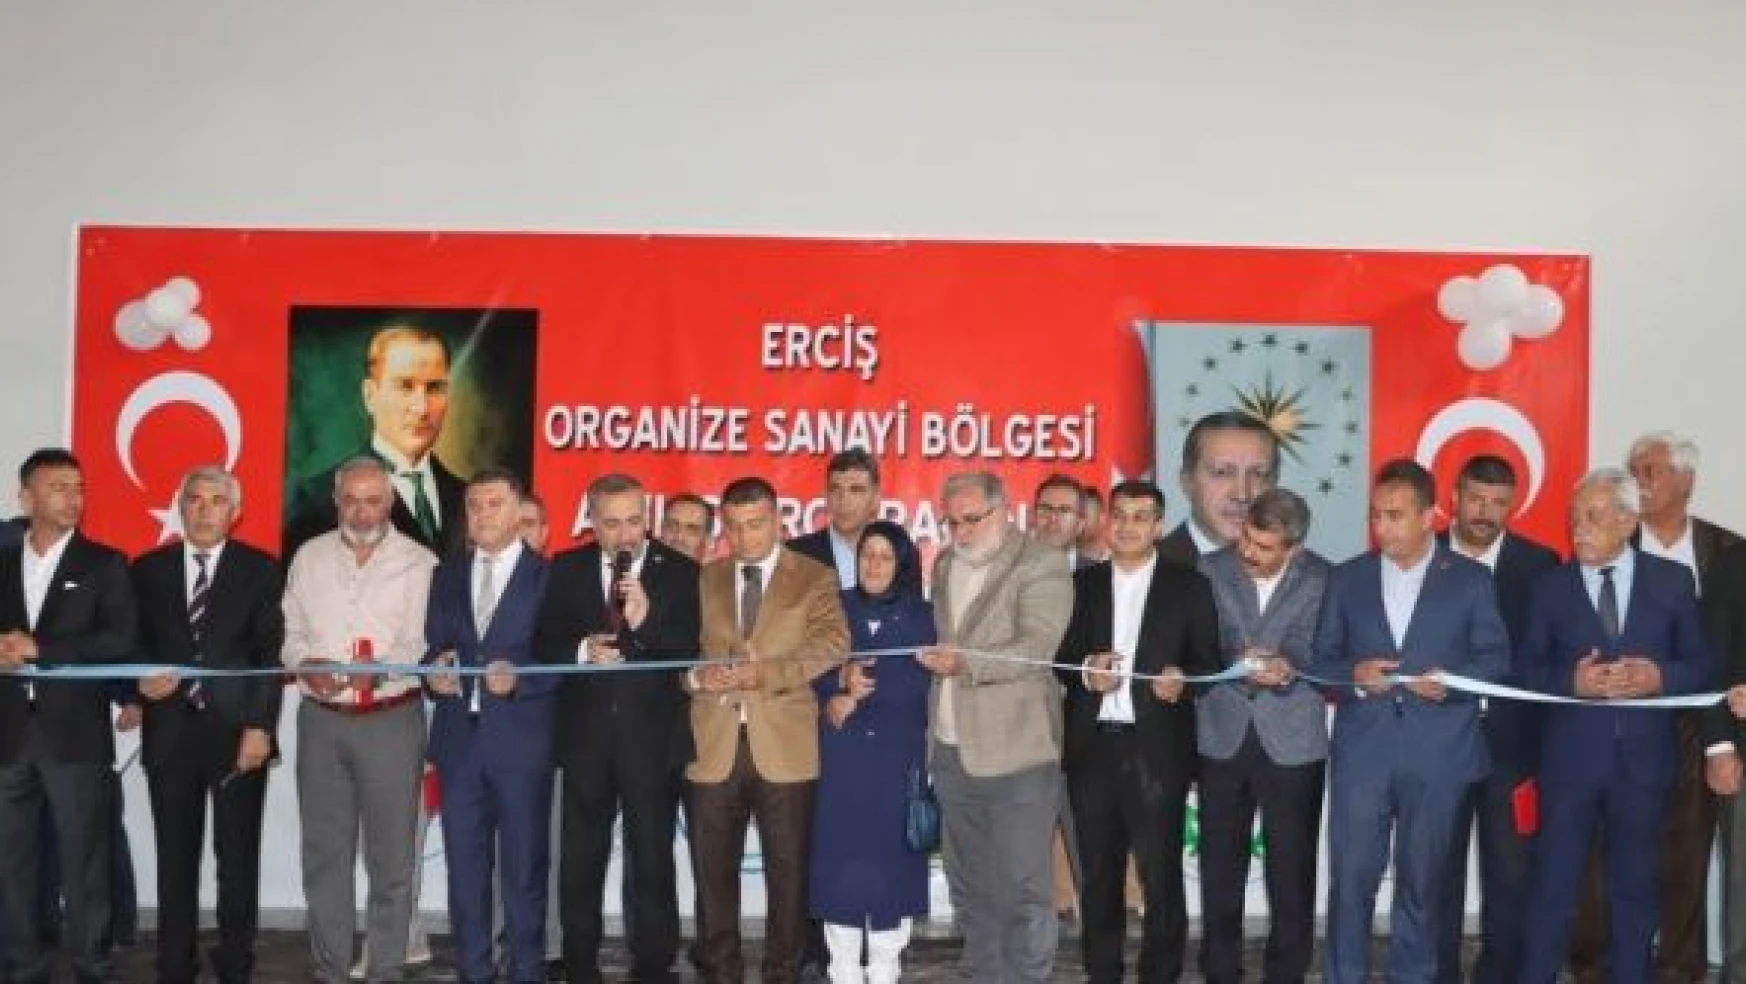 Erciş Organize Sanayi Bölgesine kavuştu